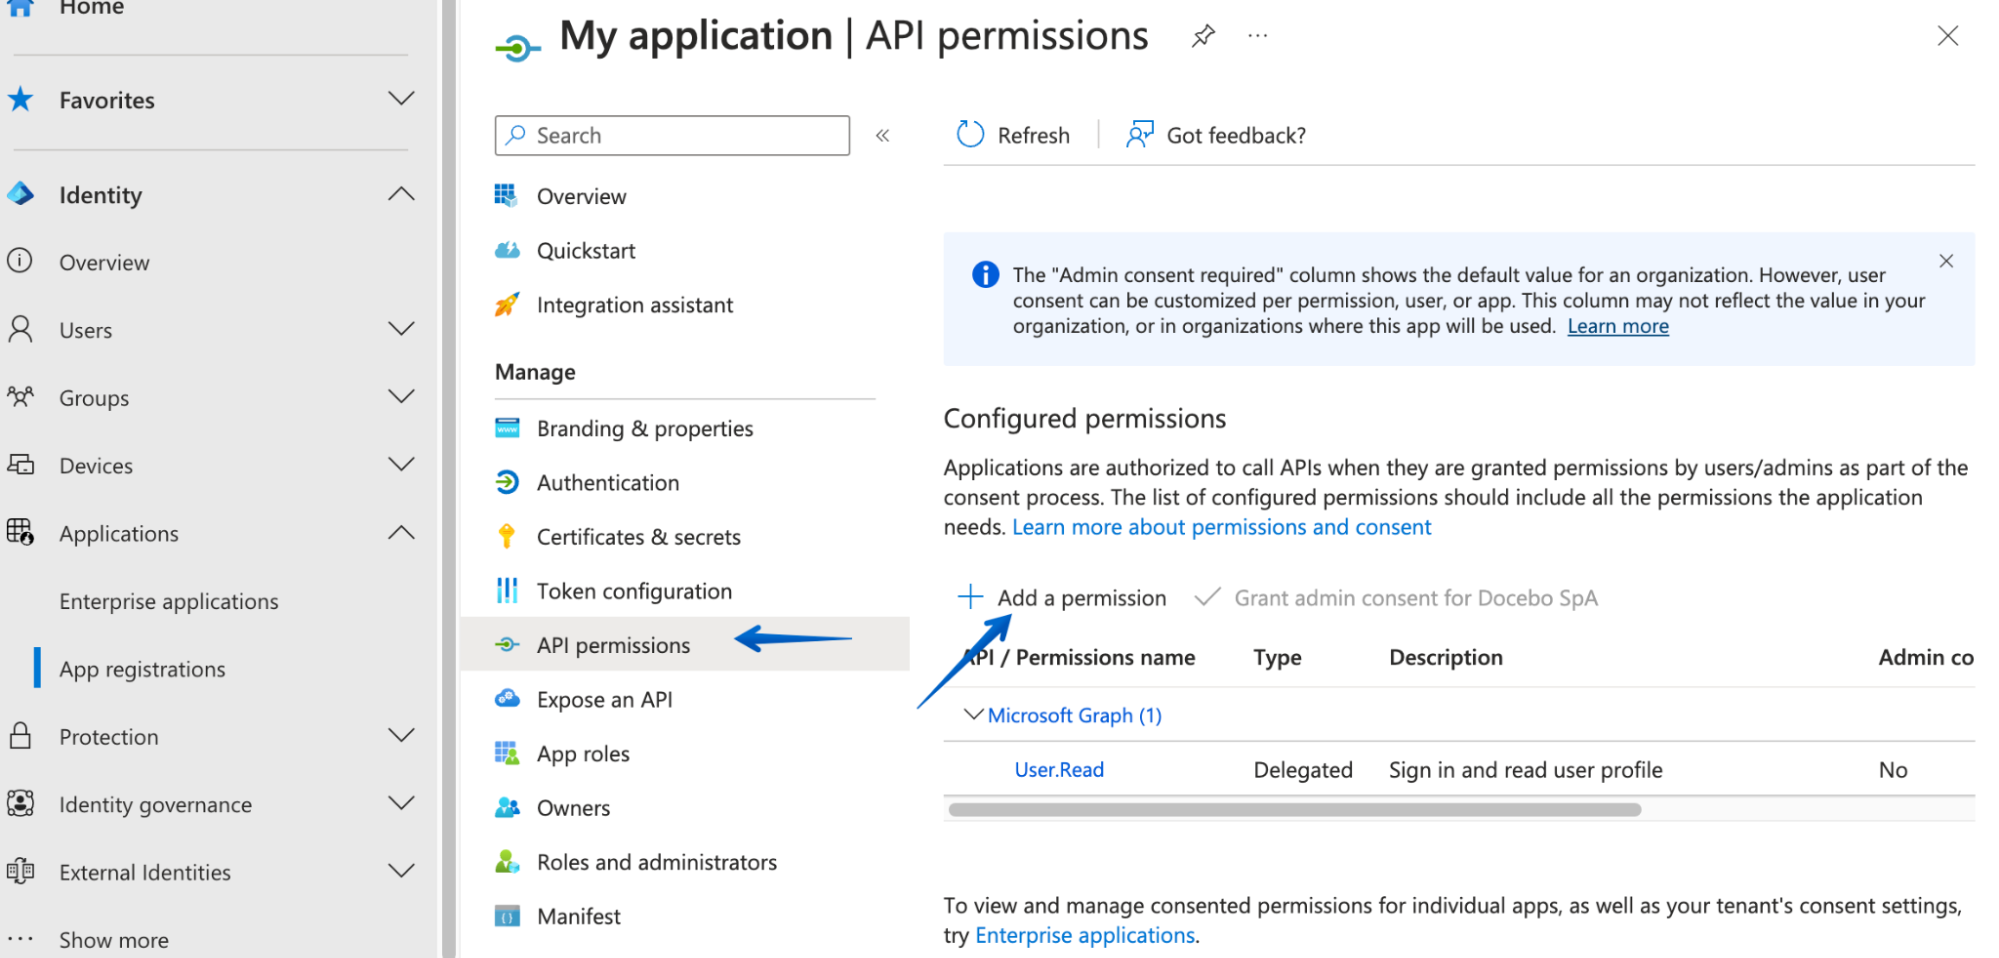 Premere API permissions nel menu Manage e selezionare Add a permission